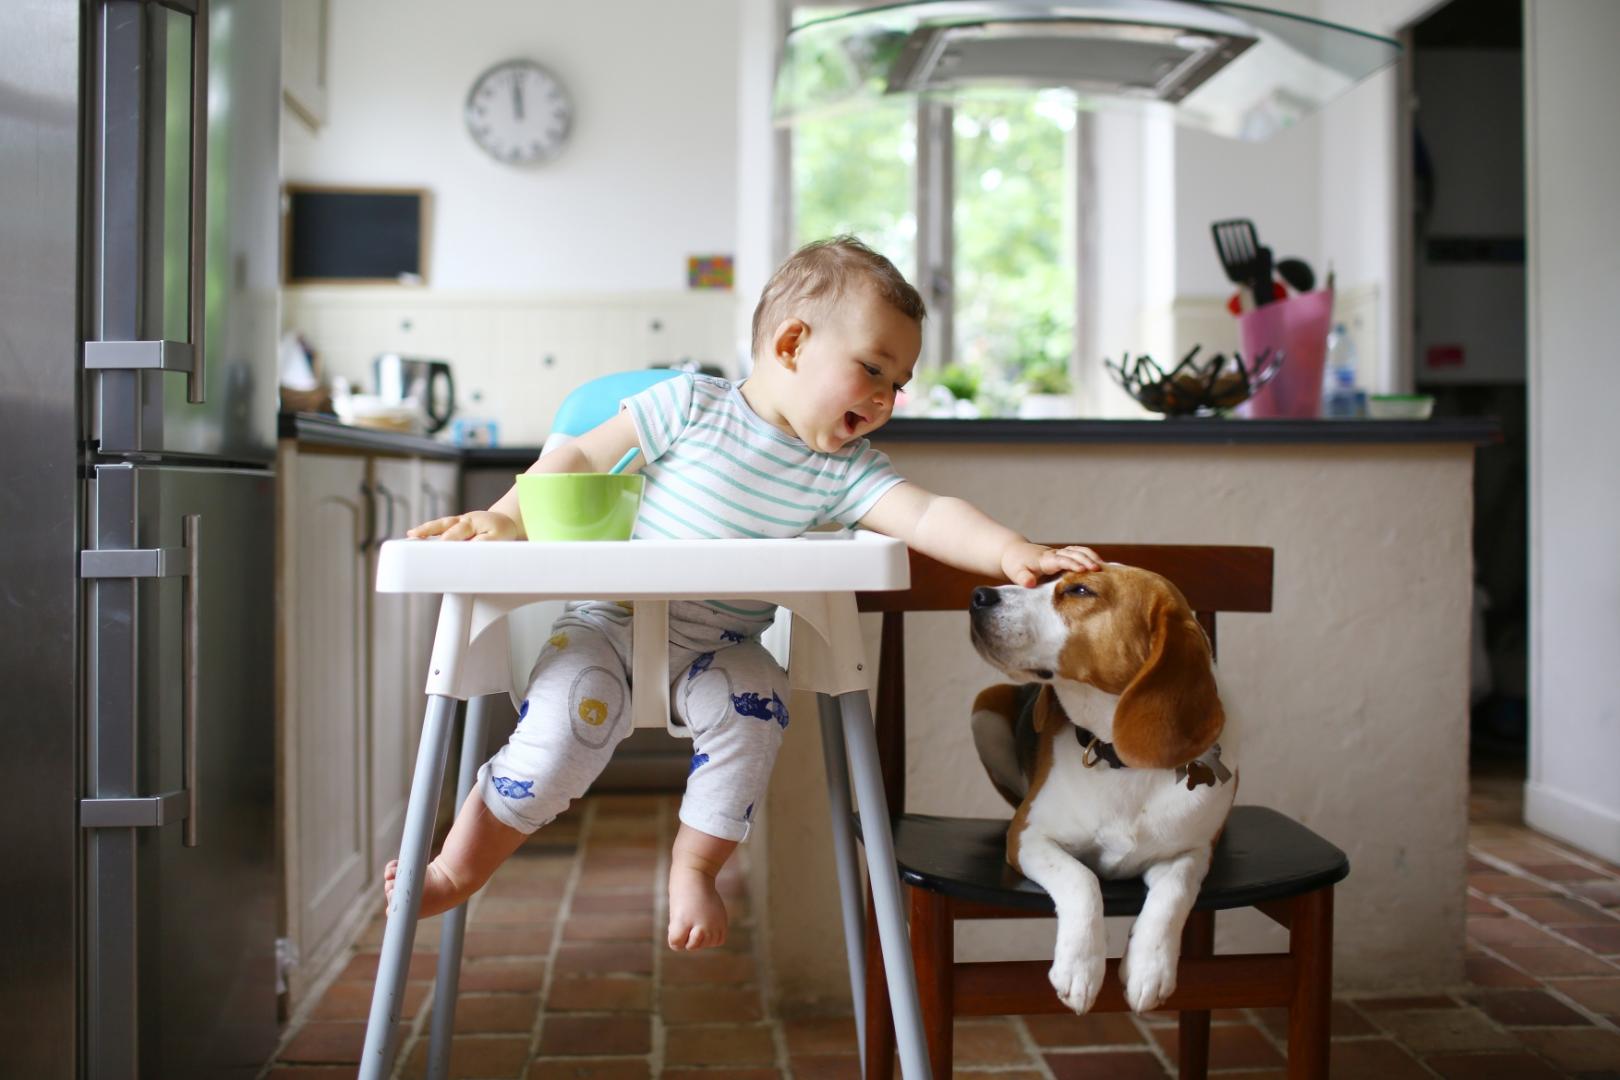  Erősíti a gyerekek immunrendszerét, ha kutyával élnek együtt